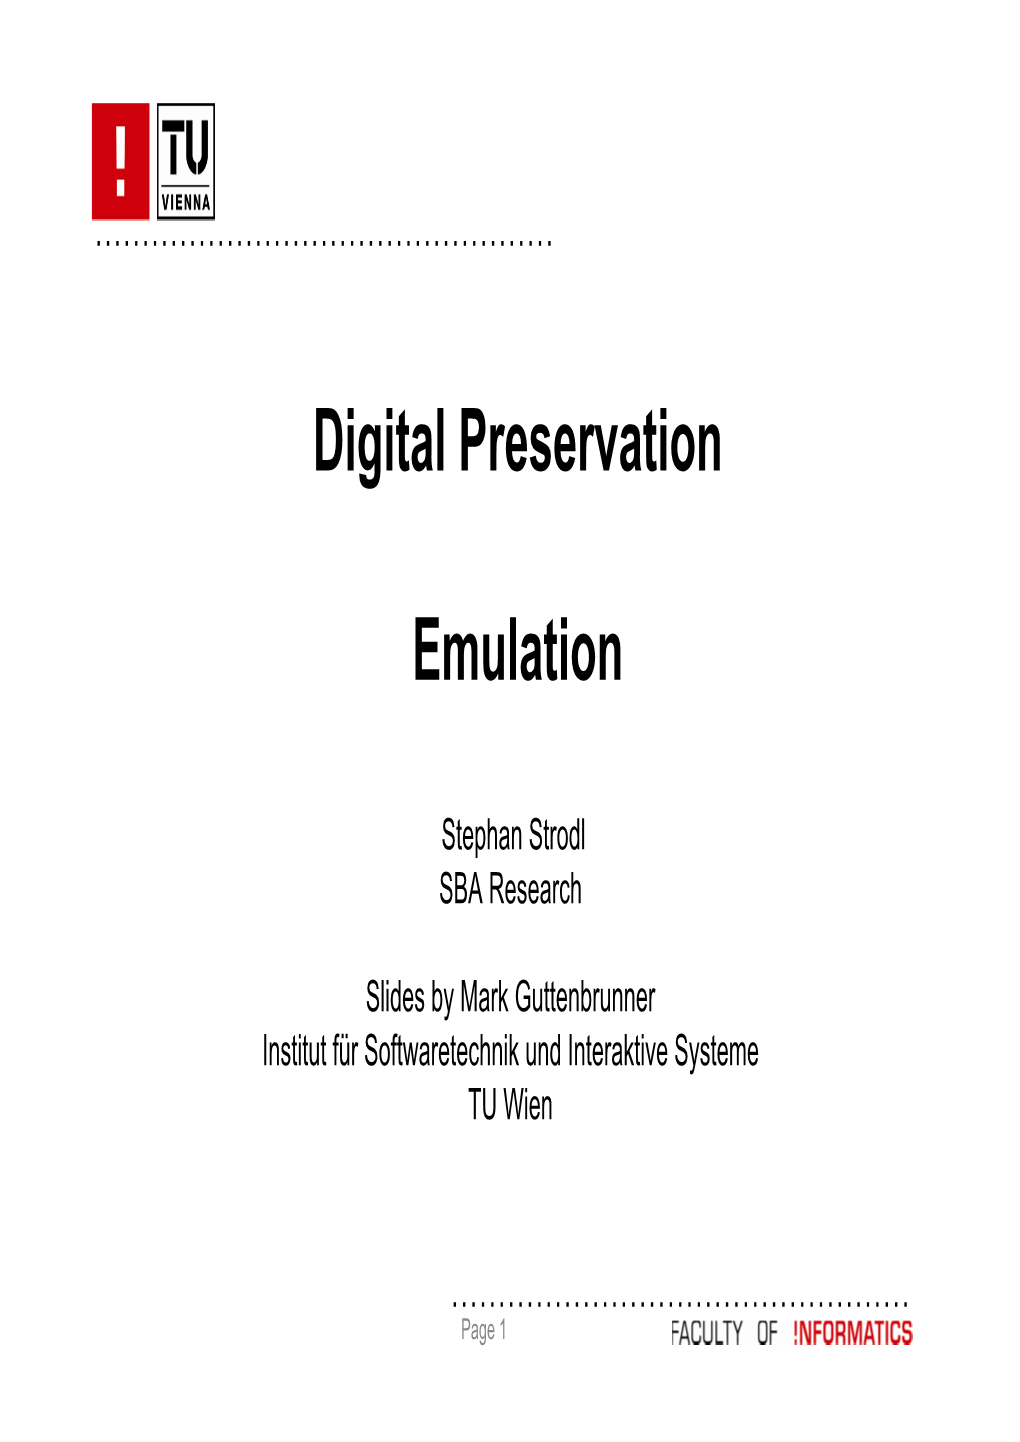 Digital Preservation Emulation